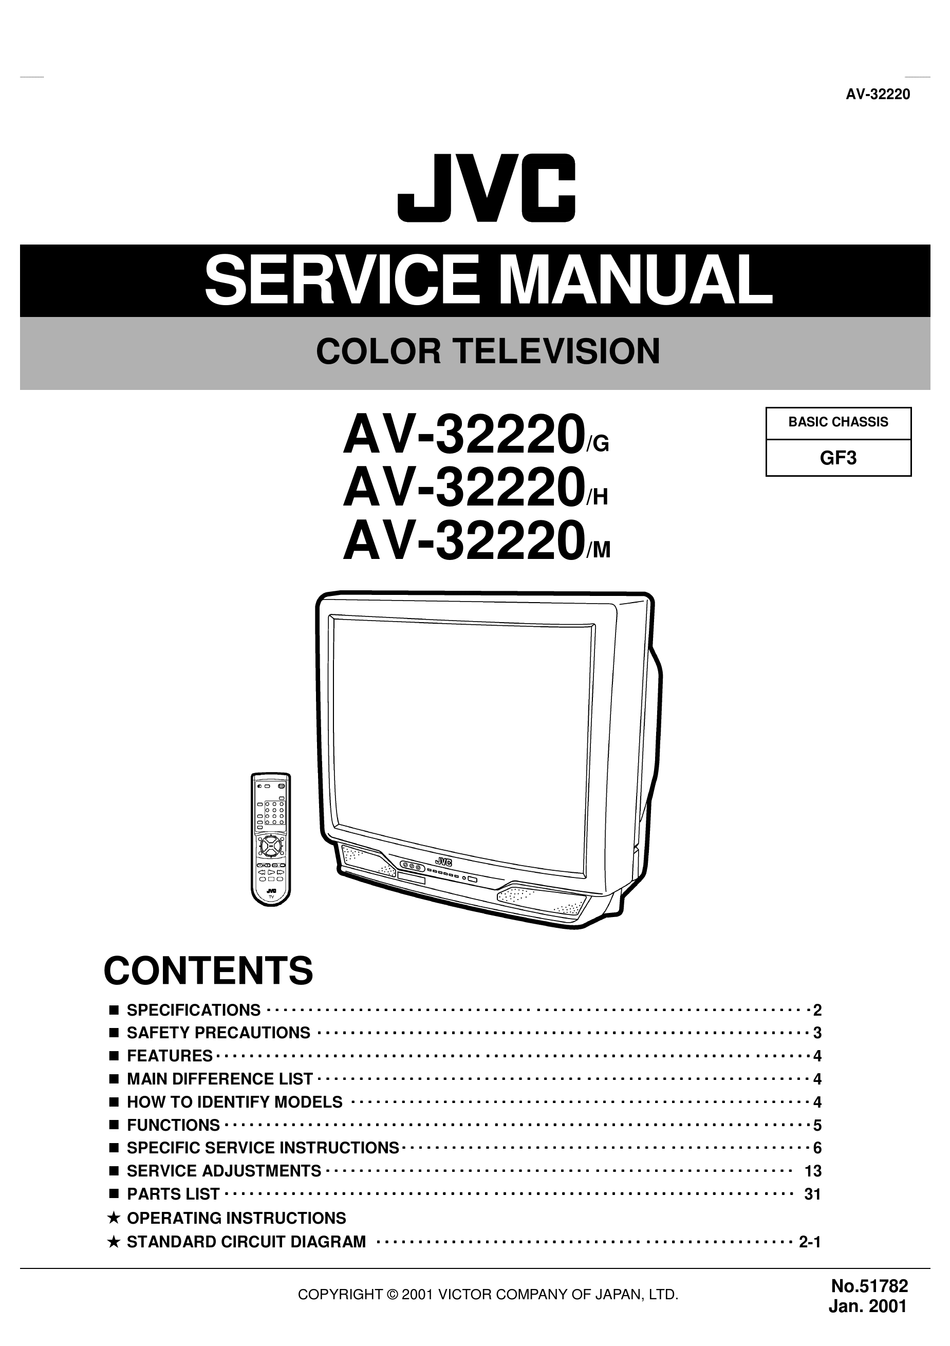 JVC AV-32220/G SERVICE MANUAL Pdf Download | ManualsLib